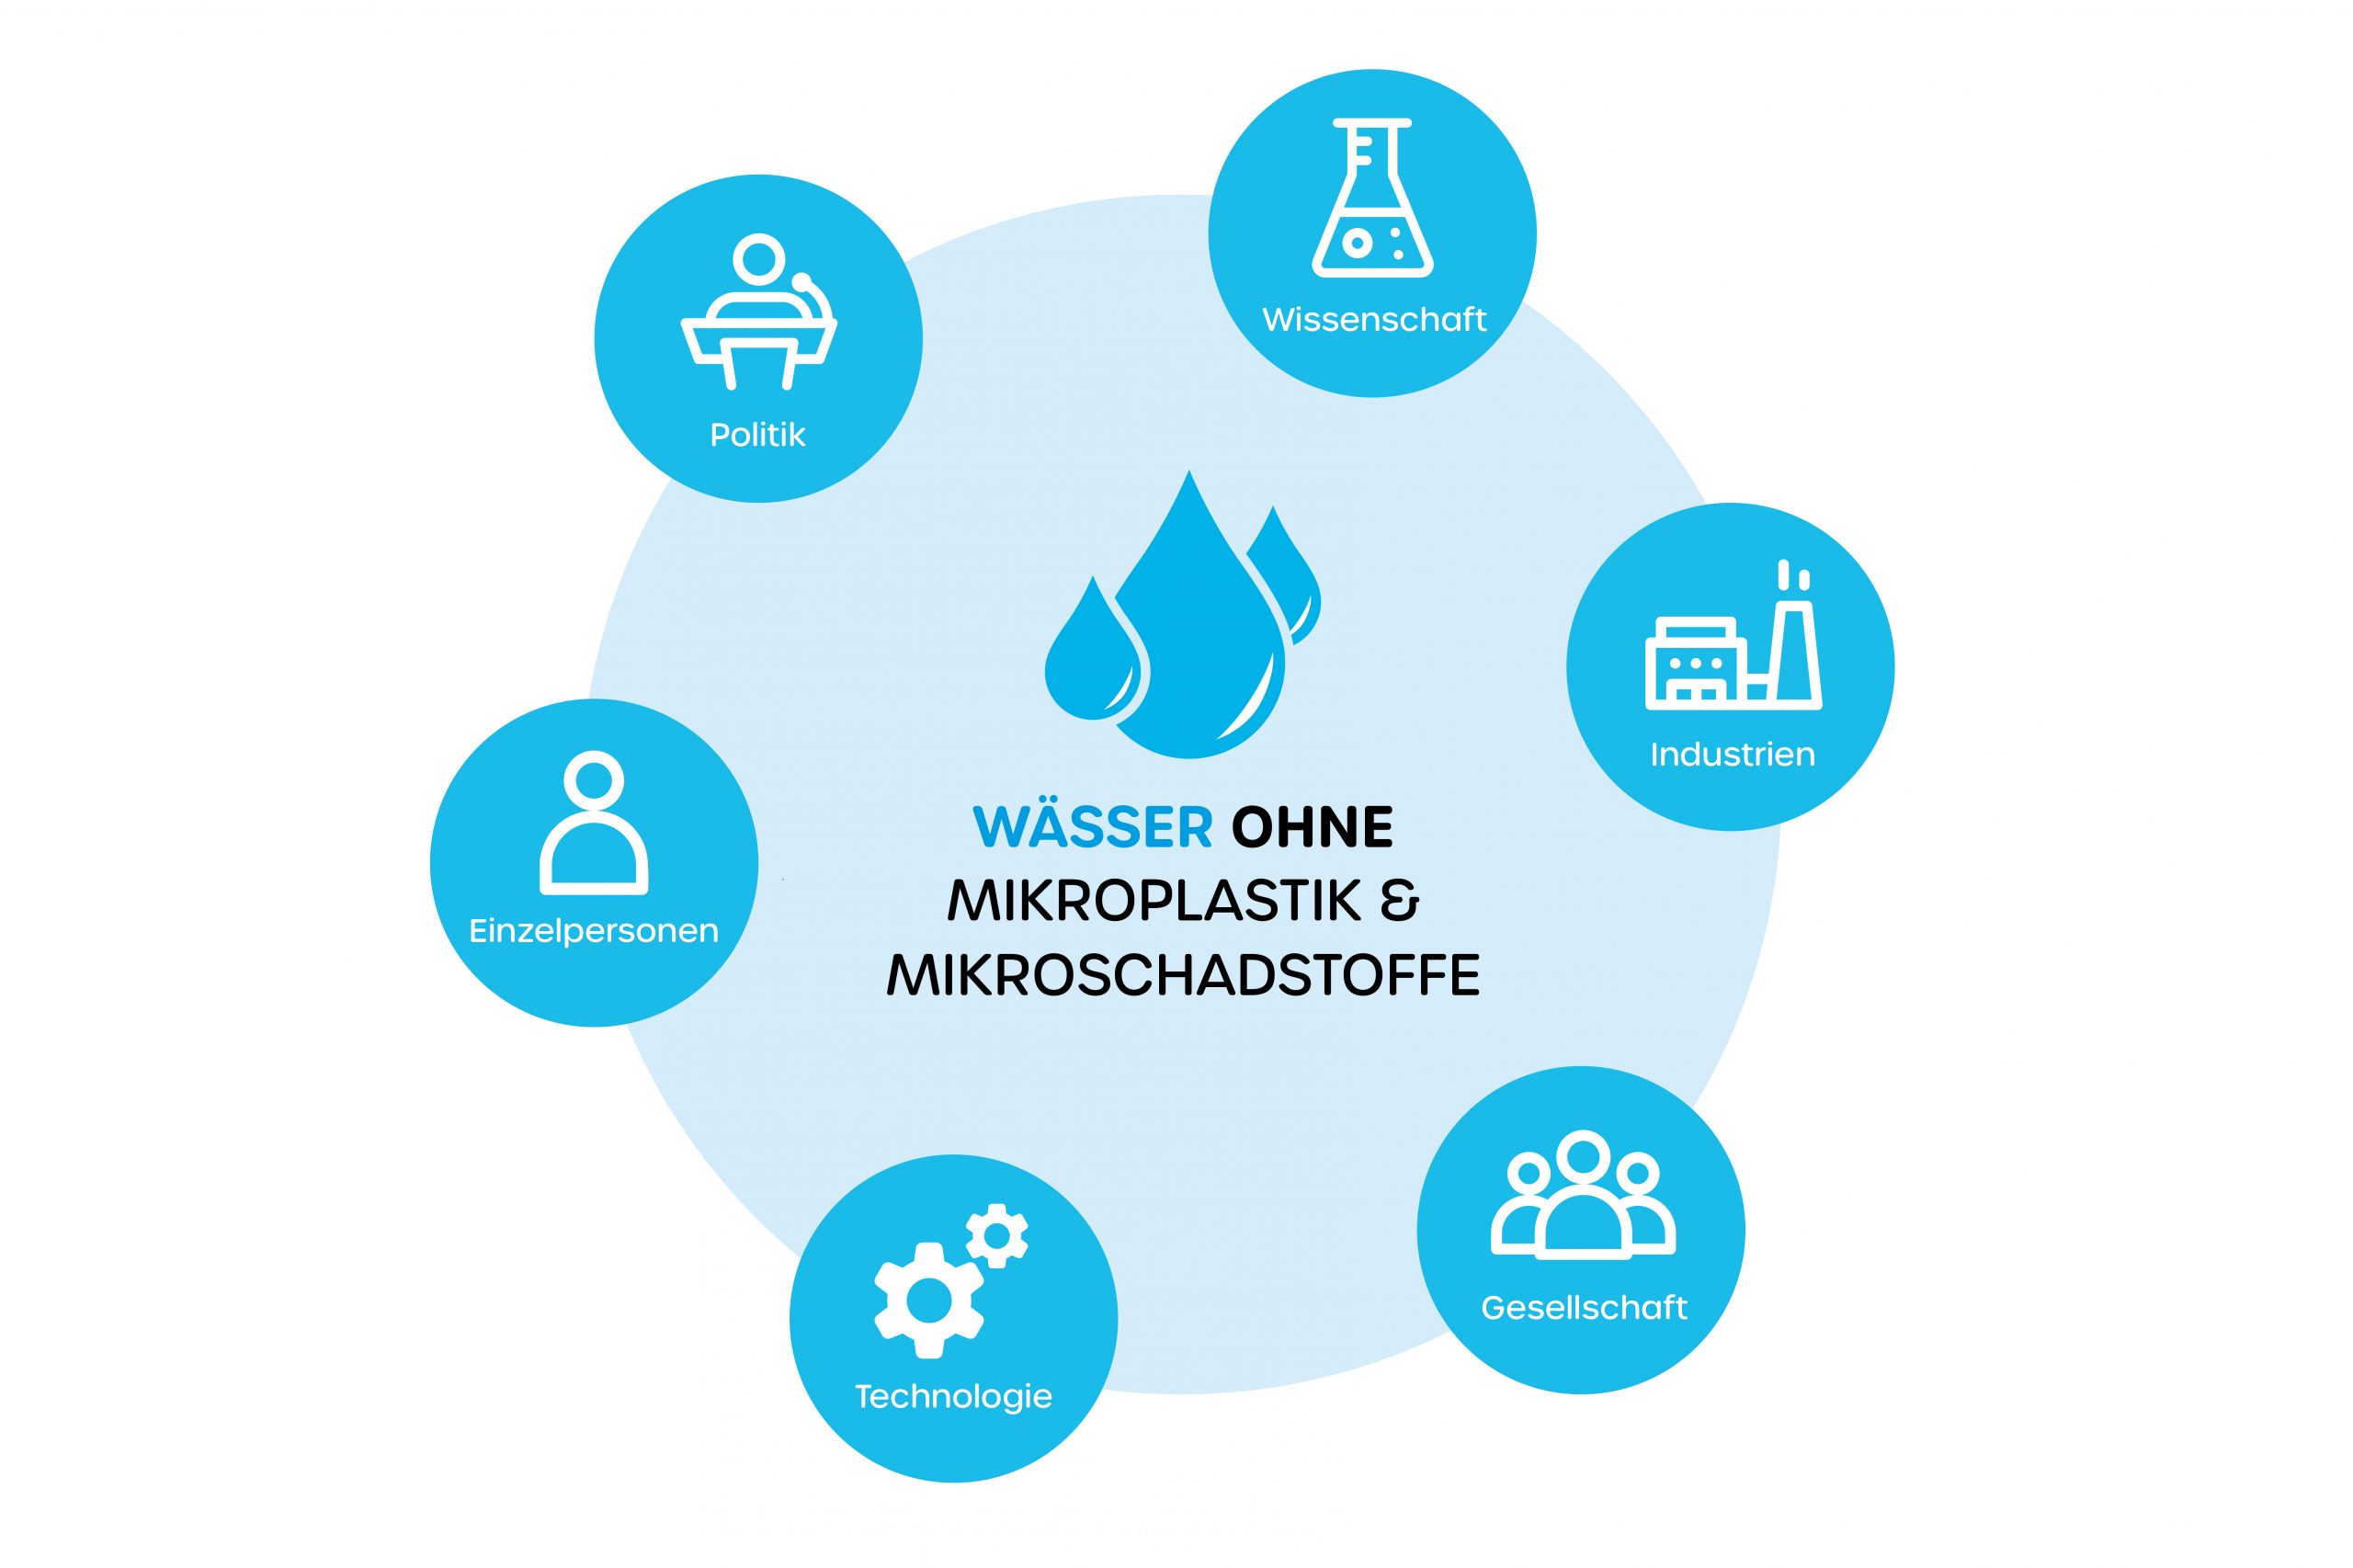 Wässer ohne Mikroplastik und Mikroschadstoffe - Akteure des Stakeholder-Dialog bei Wasser 3.0